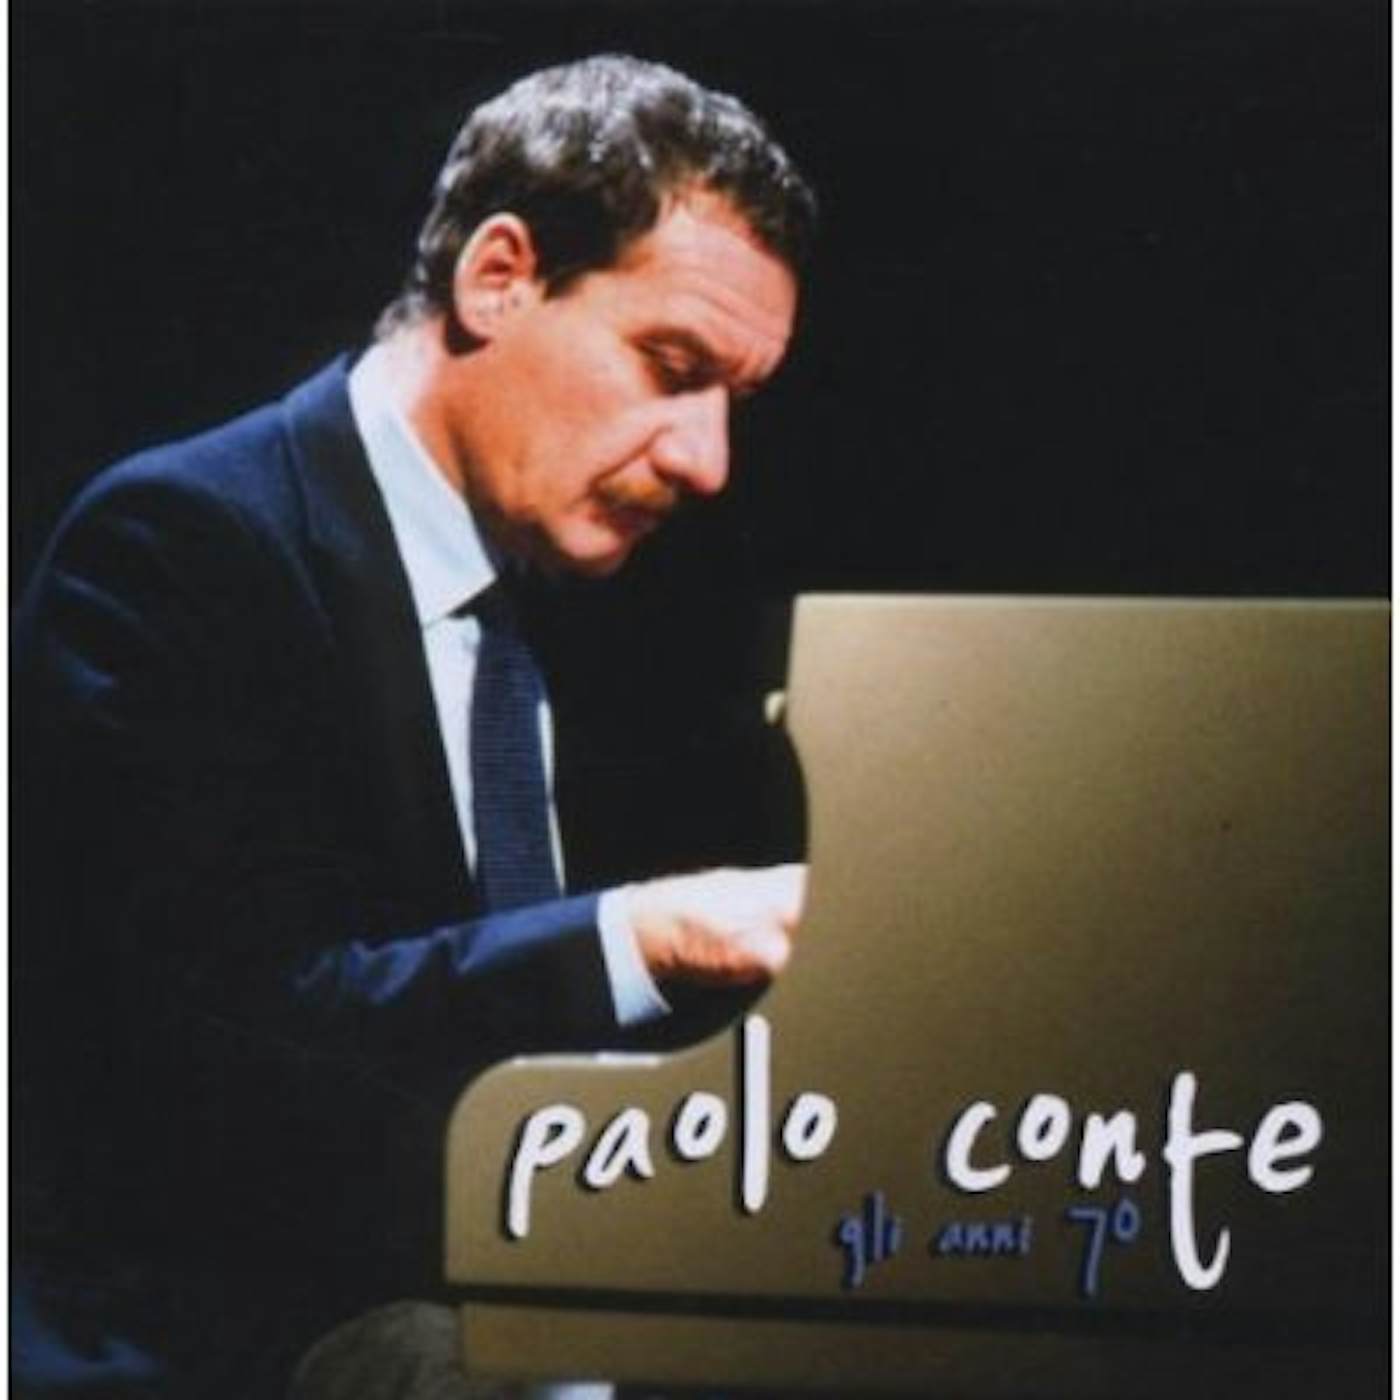 Paolo Conte GLI ANNI 70 CD